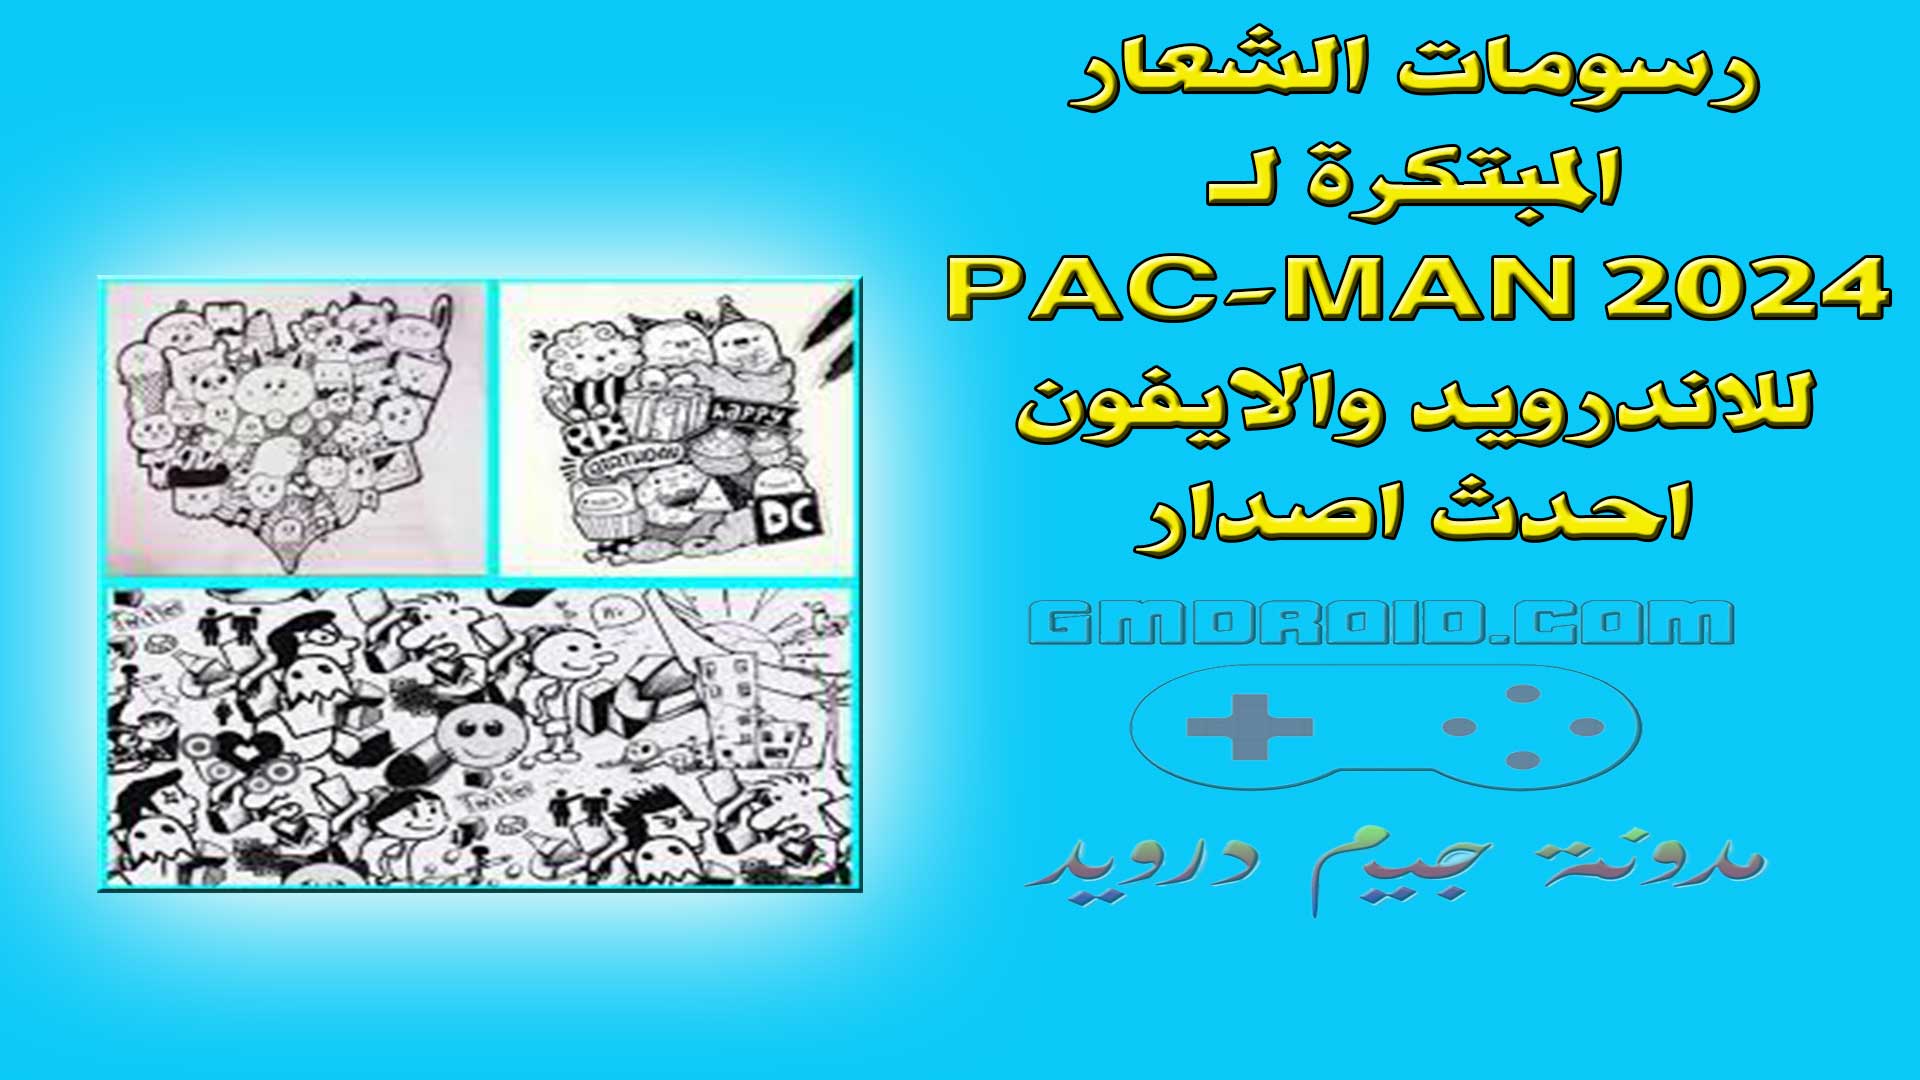 رسومات الشعار المبتكرة لـ PAC-MAN 2024 للاندرويد والايفون احدث اصدار